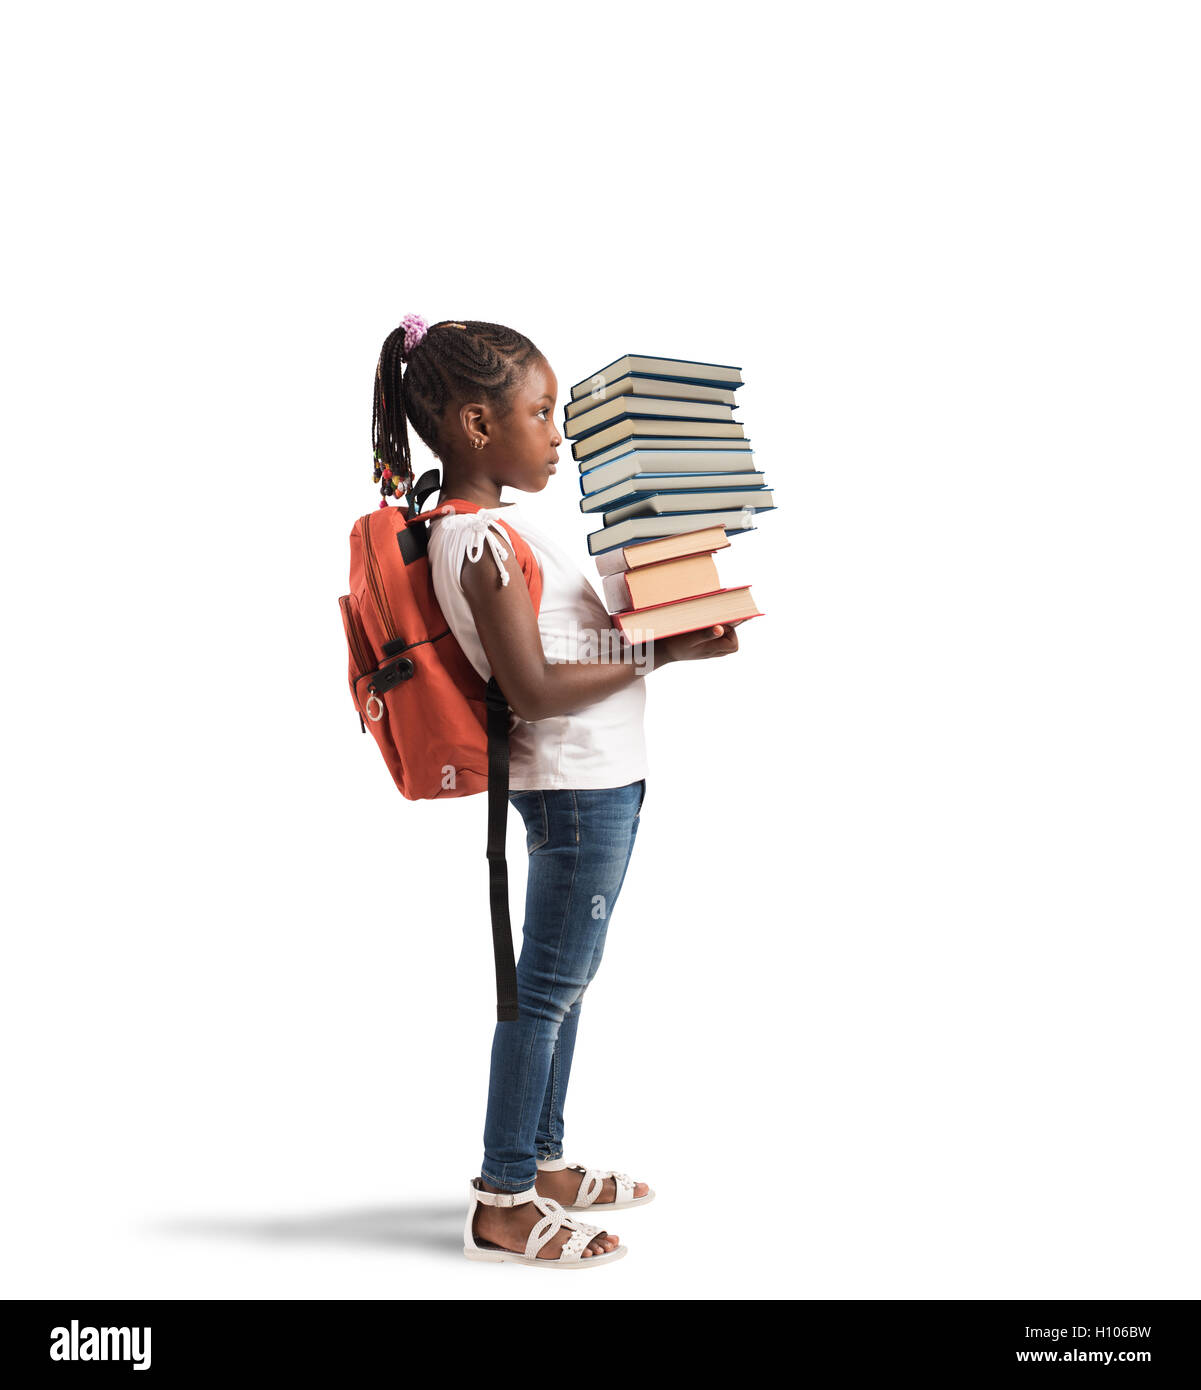 Stapel Bücher für ein kleines Mädchen Stockfoto